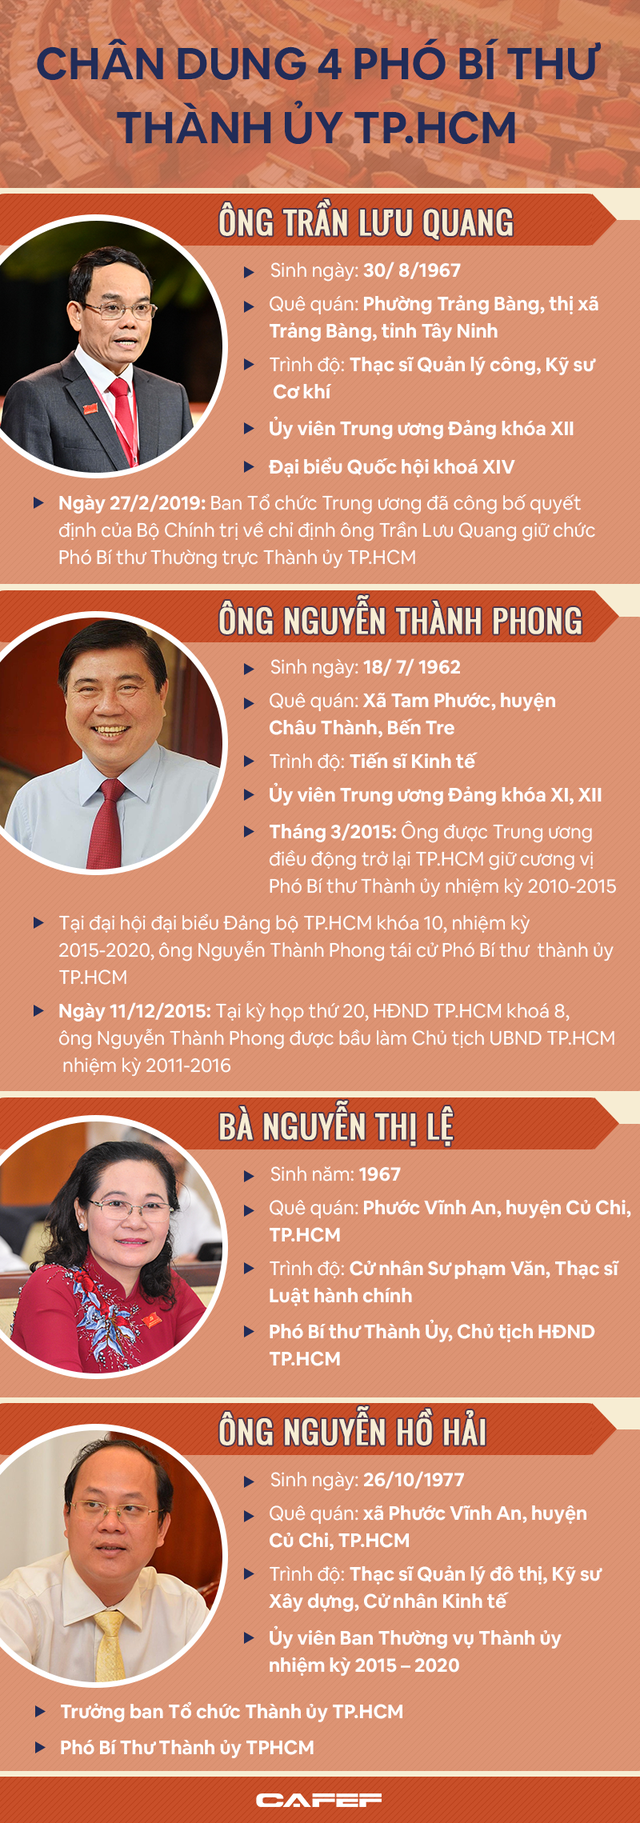 [Infographic] Chân dung 4 Phó Bí thư Thành ủy TPHCM - Ảnh 1.